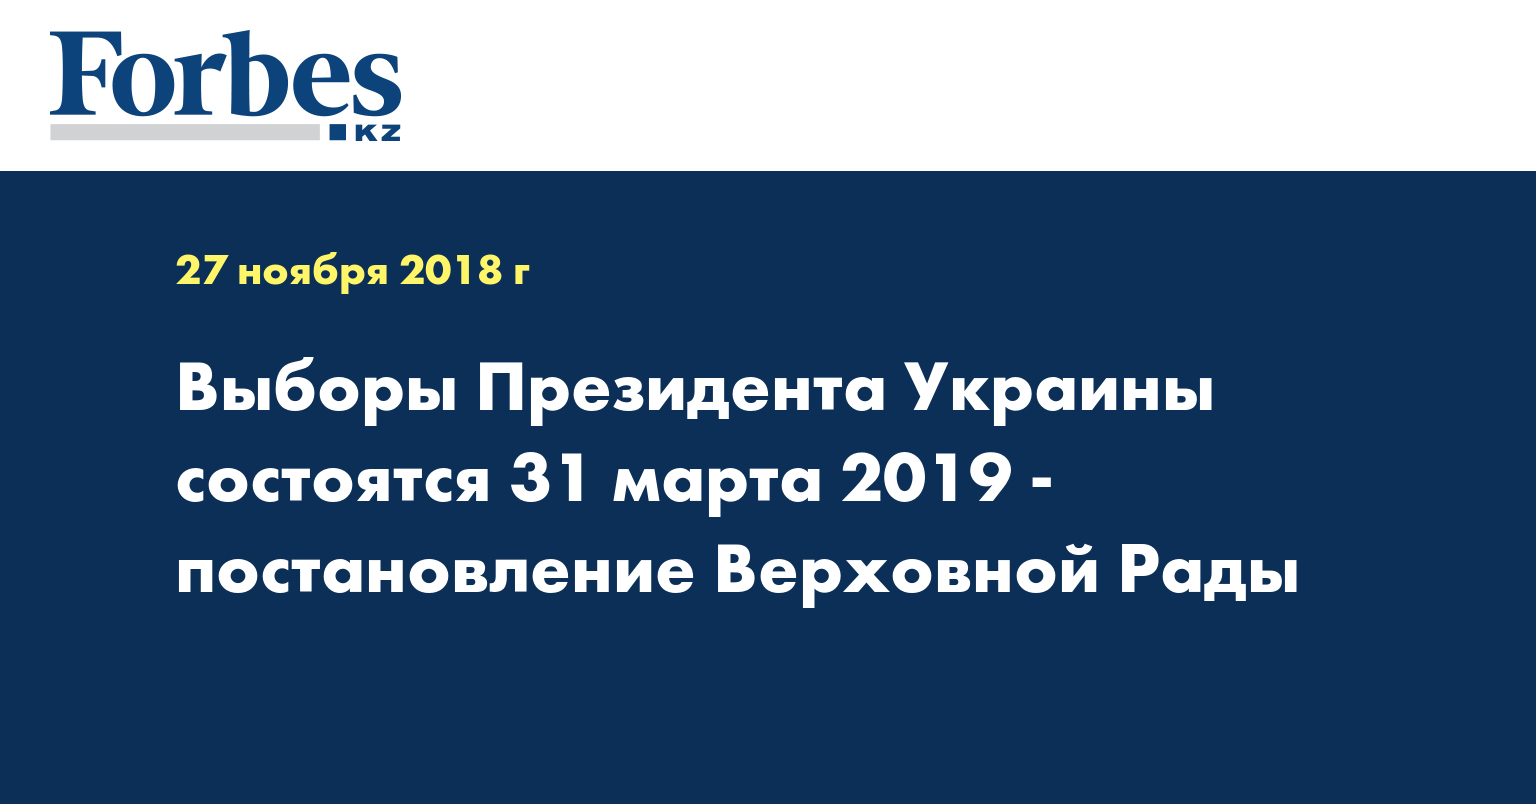 Выборы Президента Украины состоятся 31 марта 2019 - постановление Верховной Рады